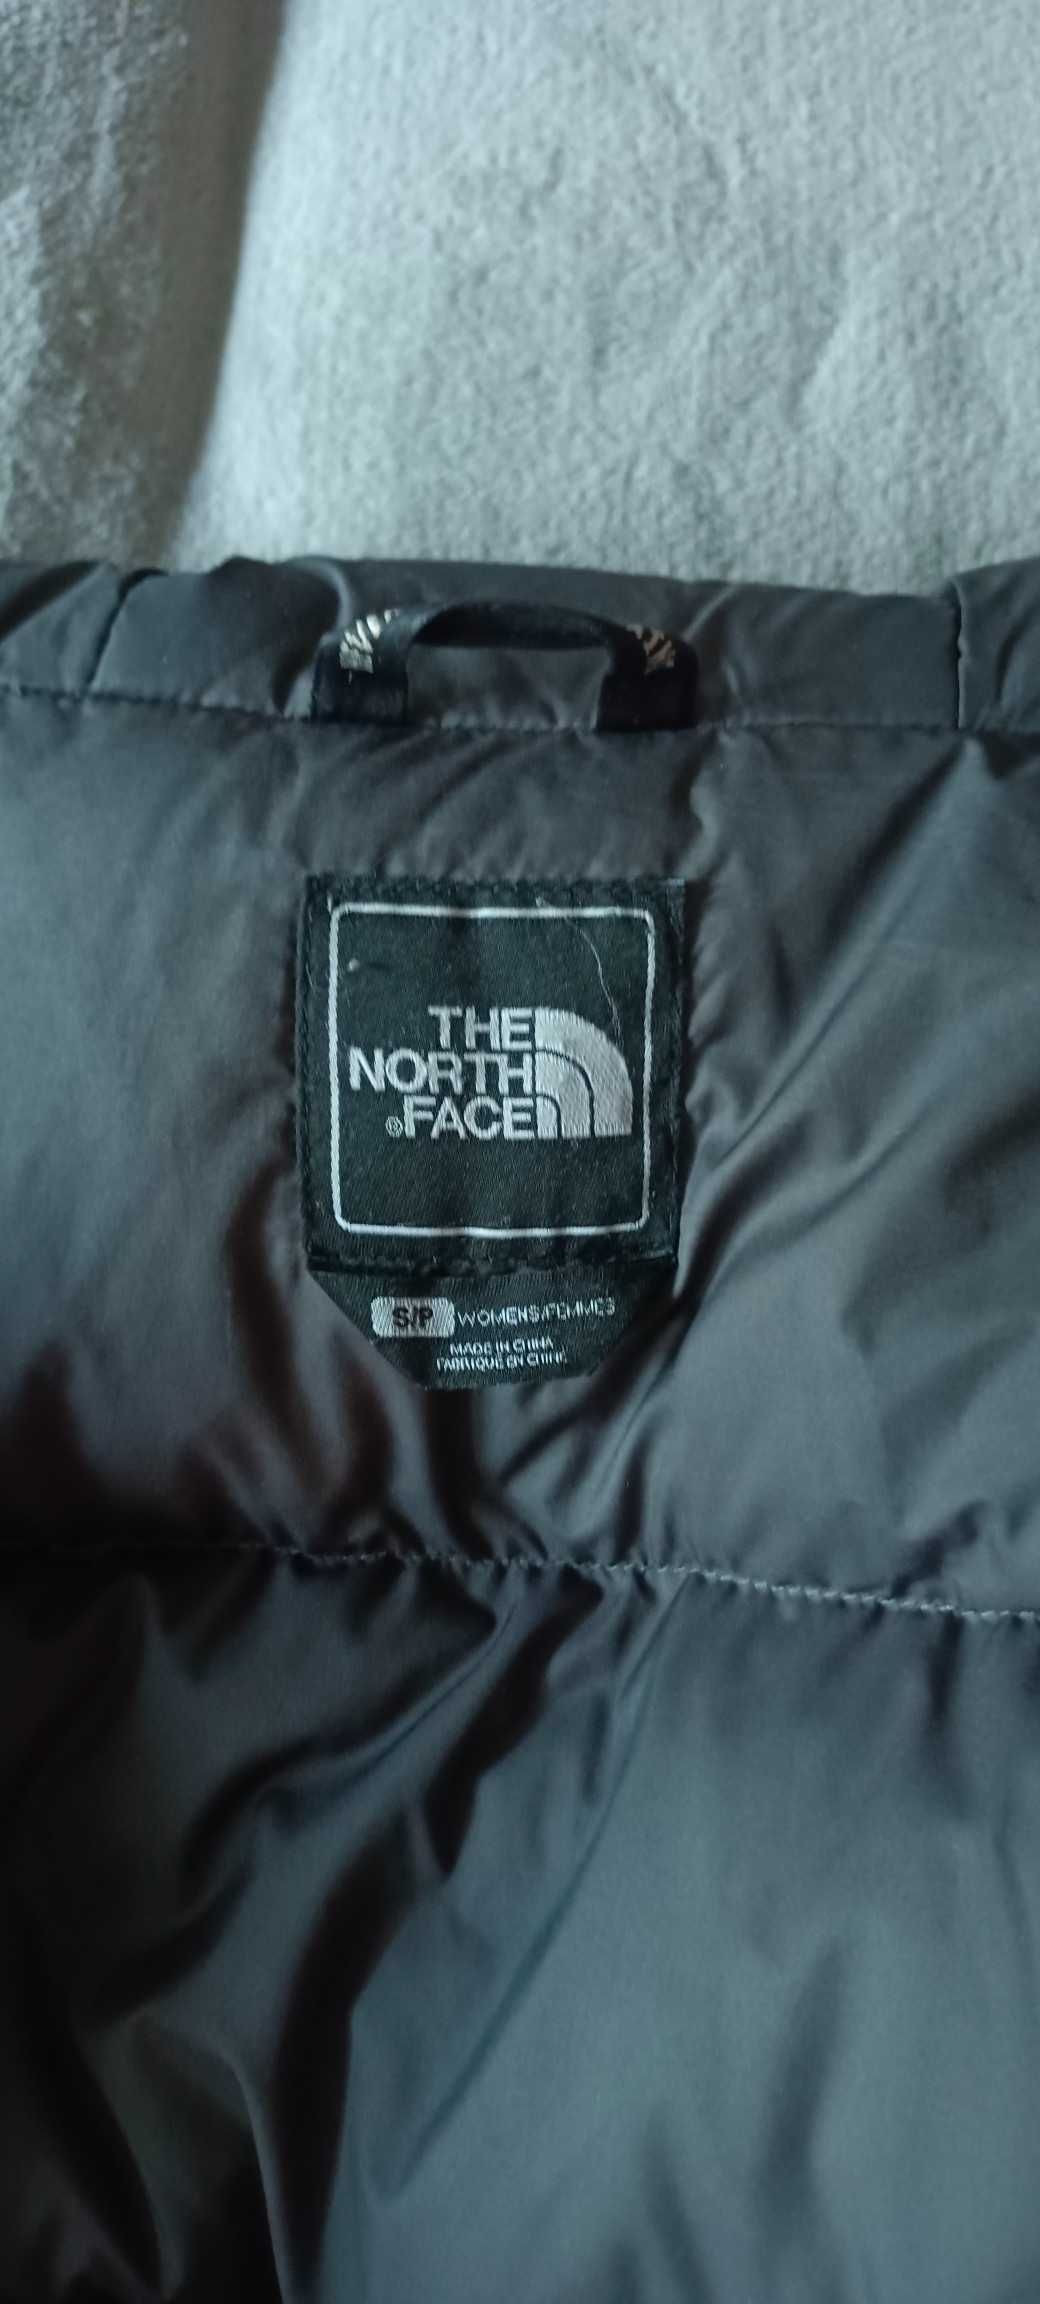 Puchowy płaszcz The North Face McMurdo parka oryginał jak nowy damski